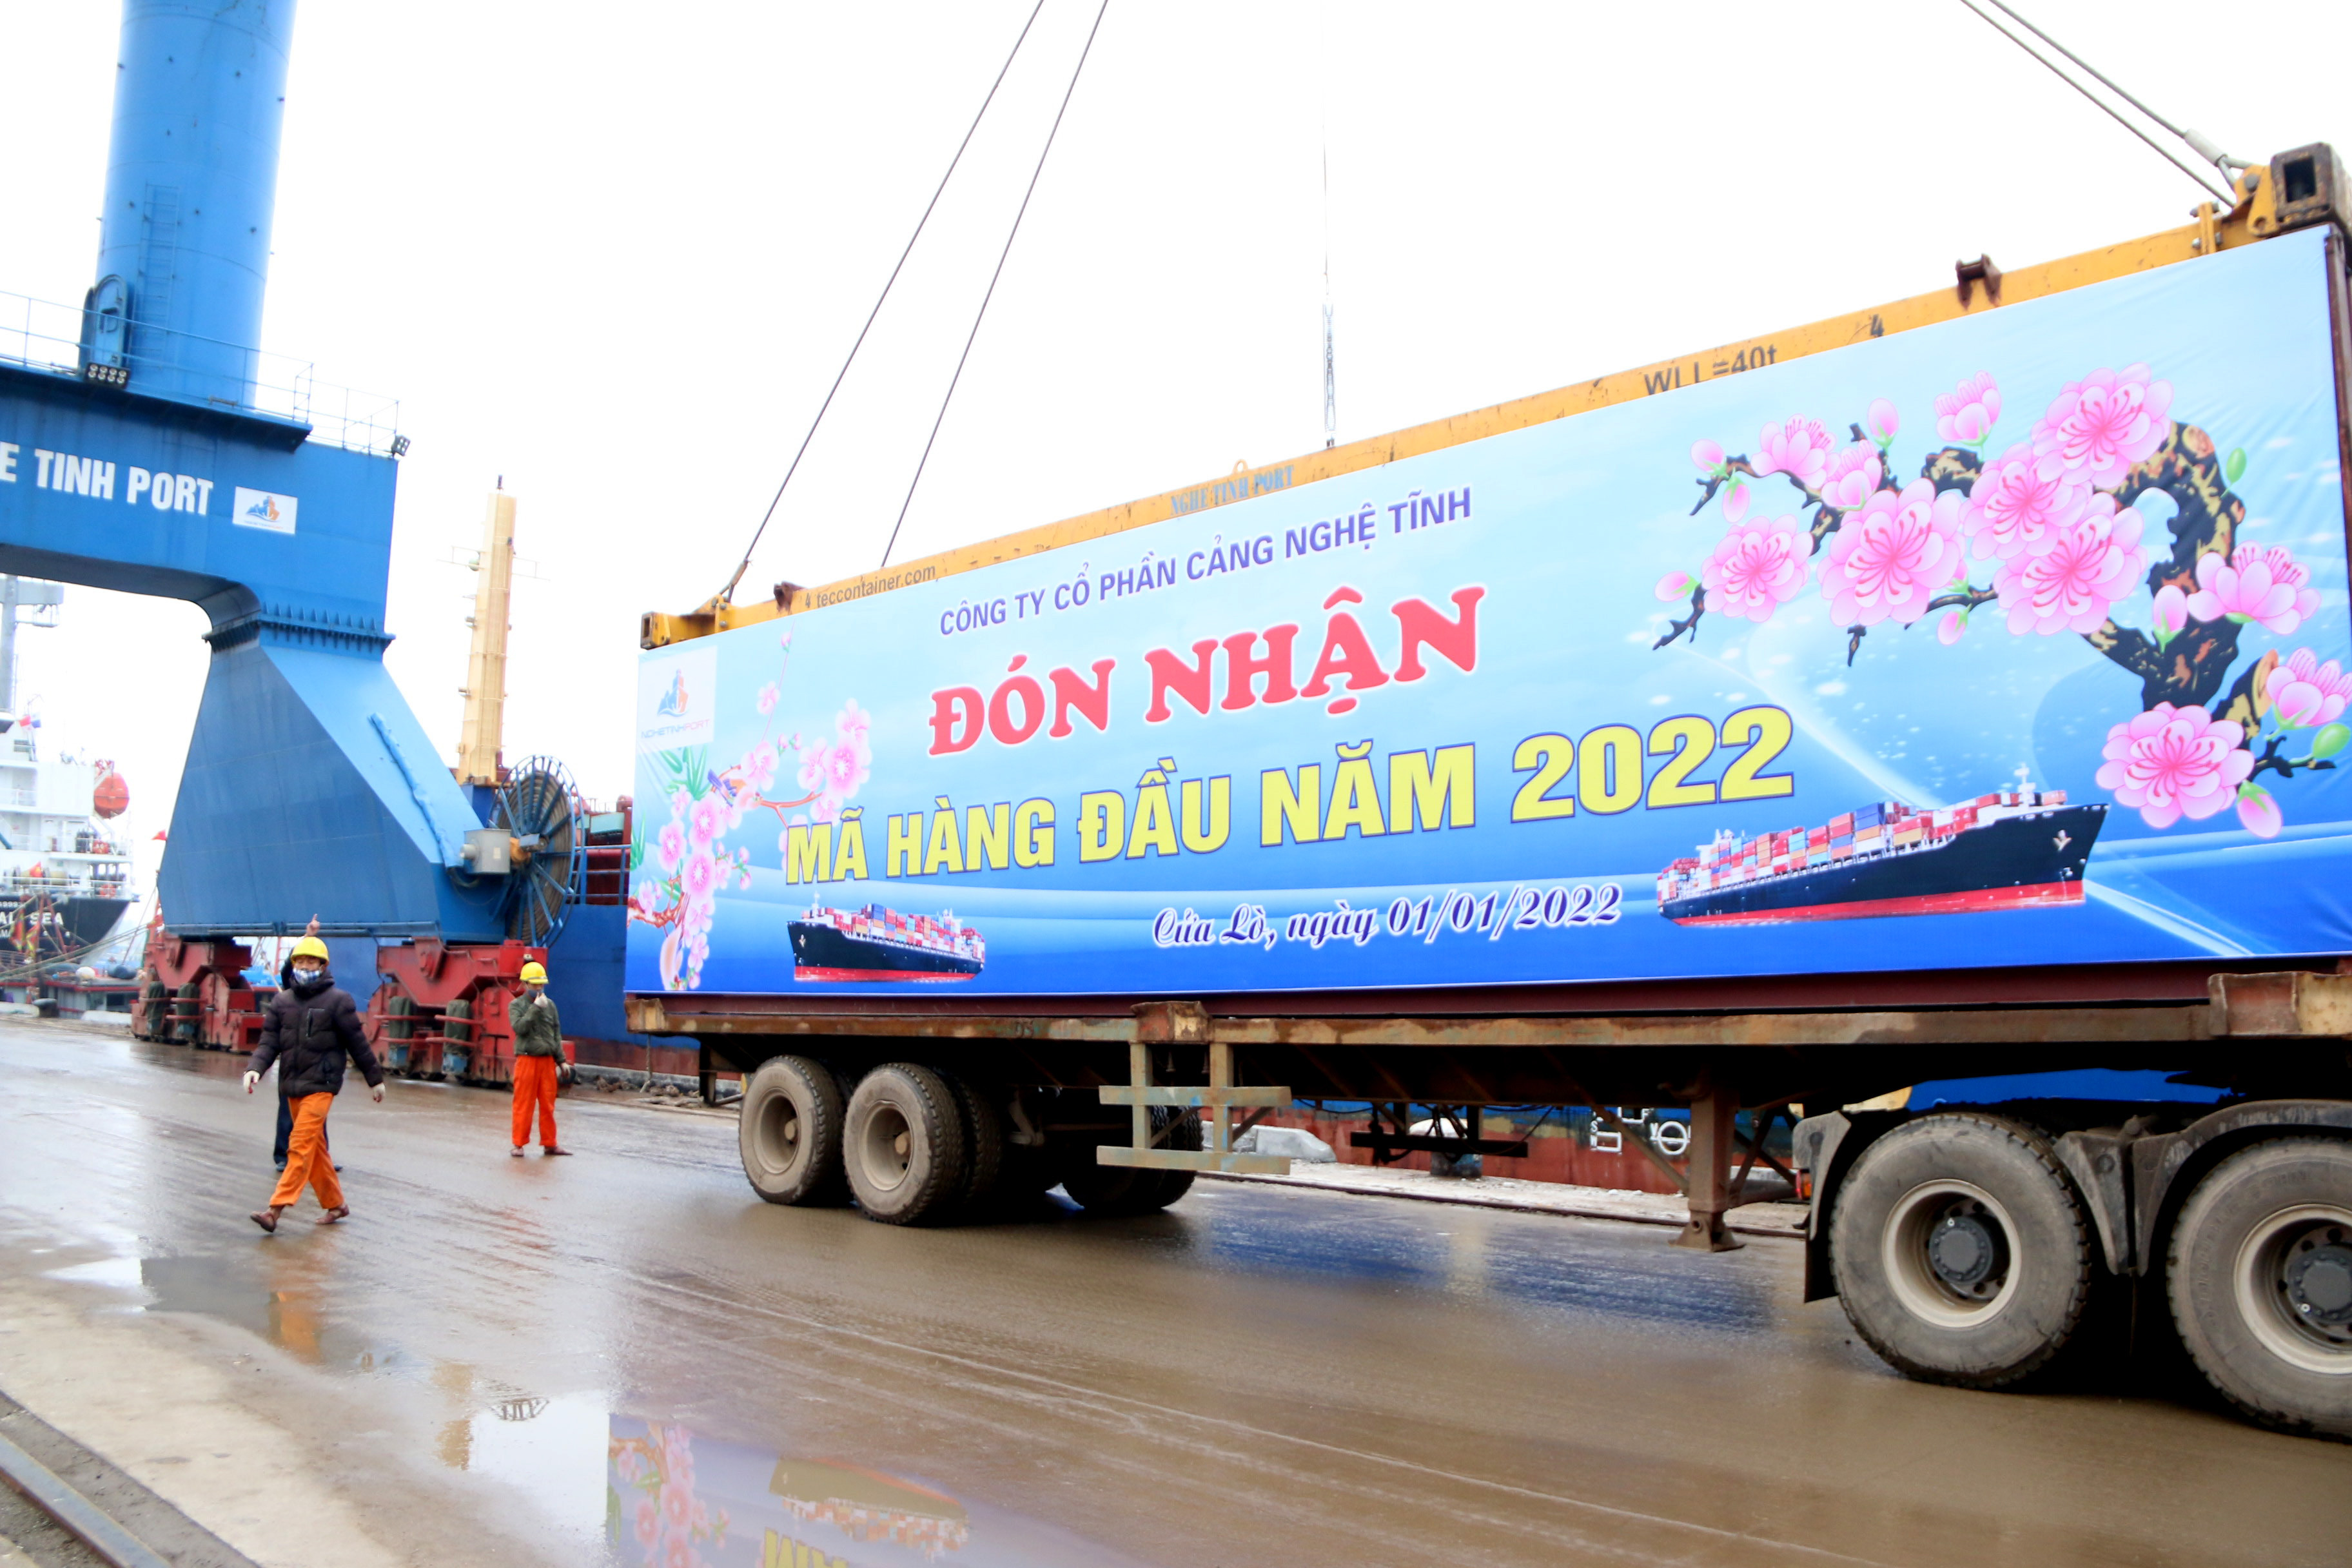 Đón nhận mã hàng đầu năm 2022 tại Cảng Nghệ Tĩnh.